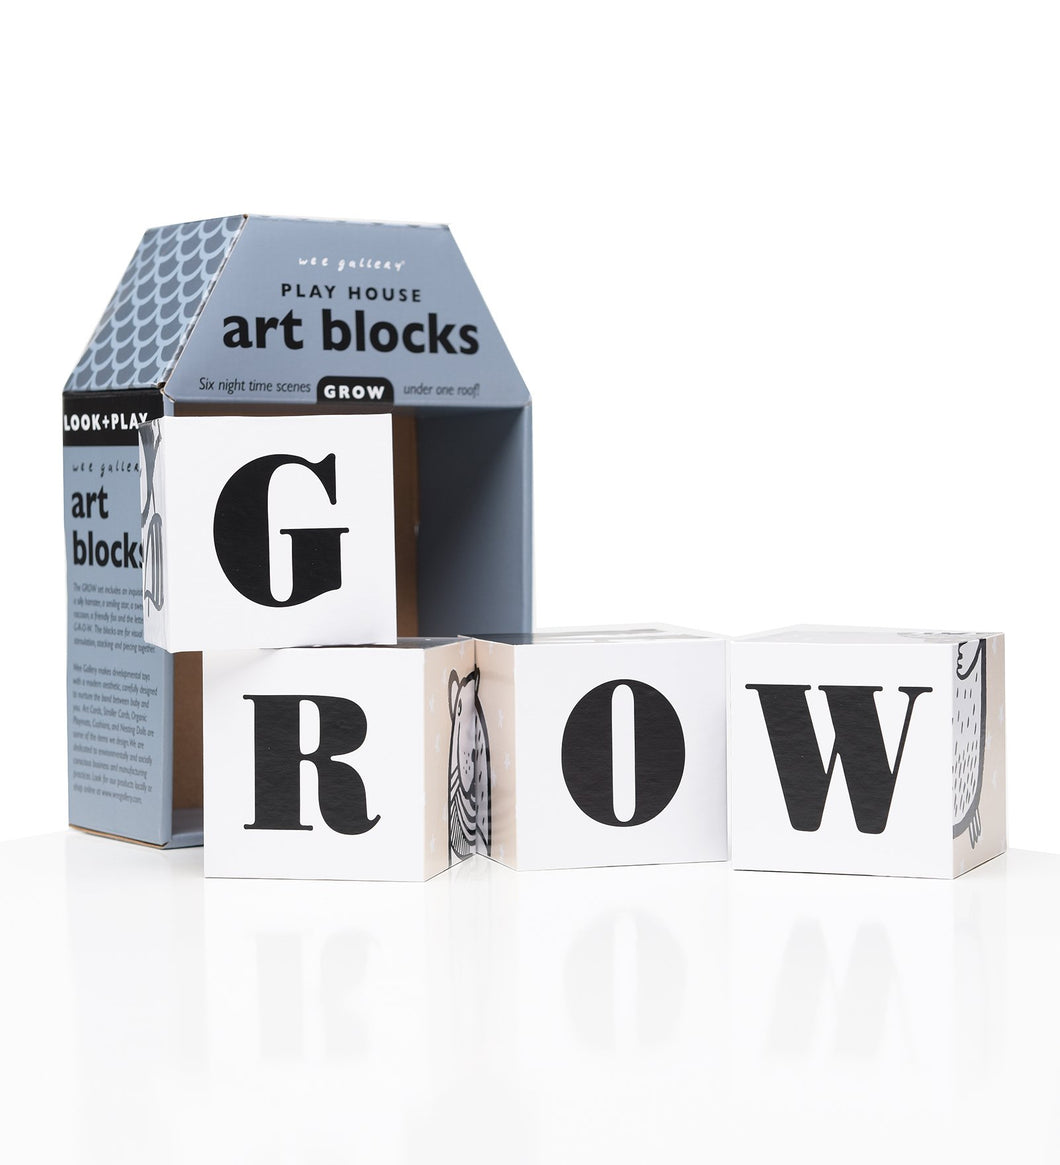 Wee Gallery Play House Art Blocks Grow